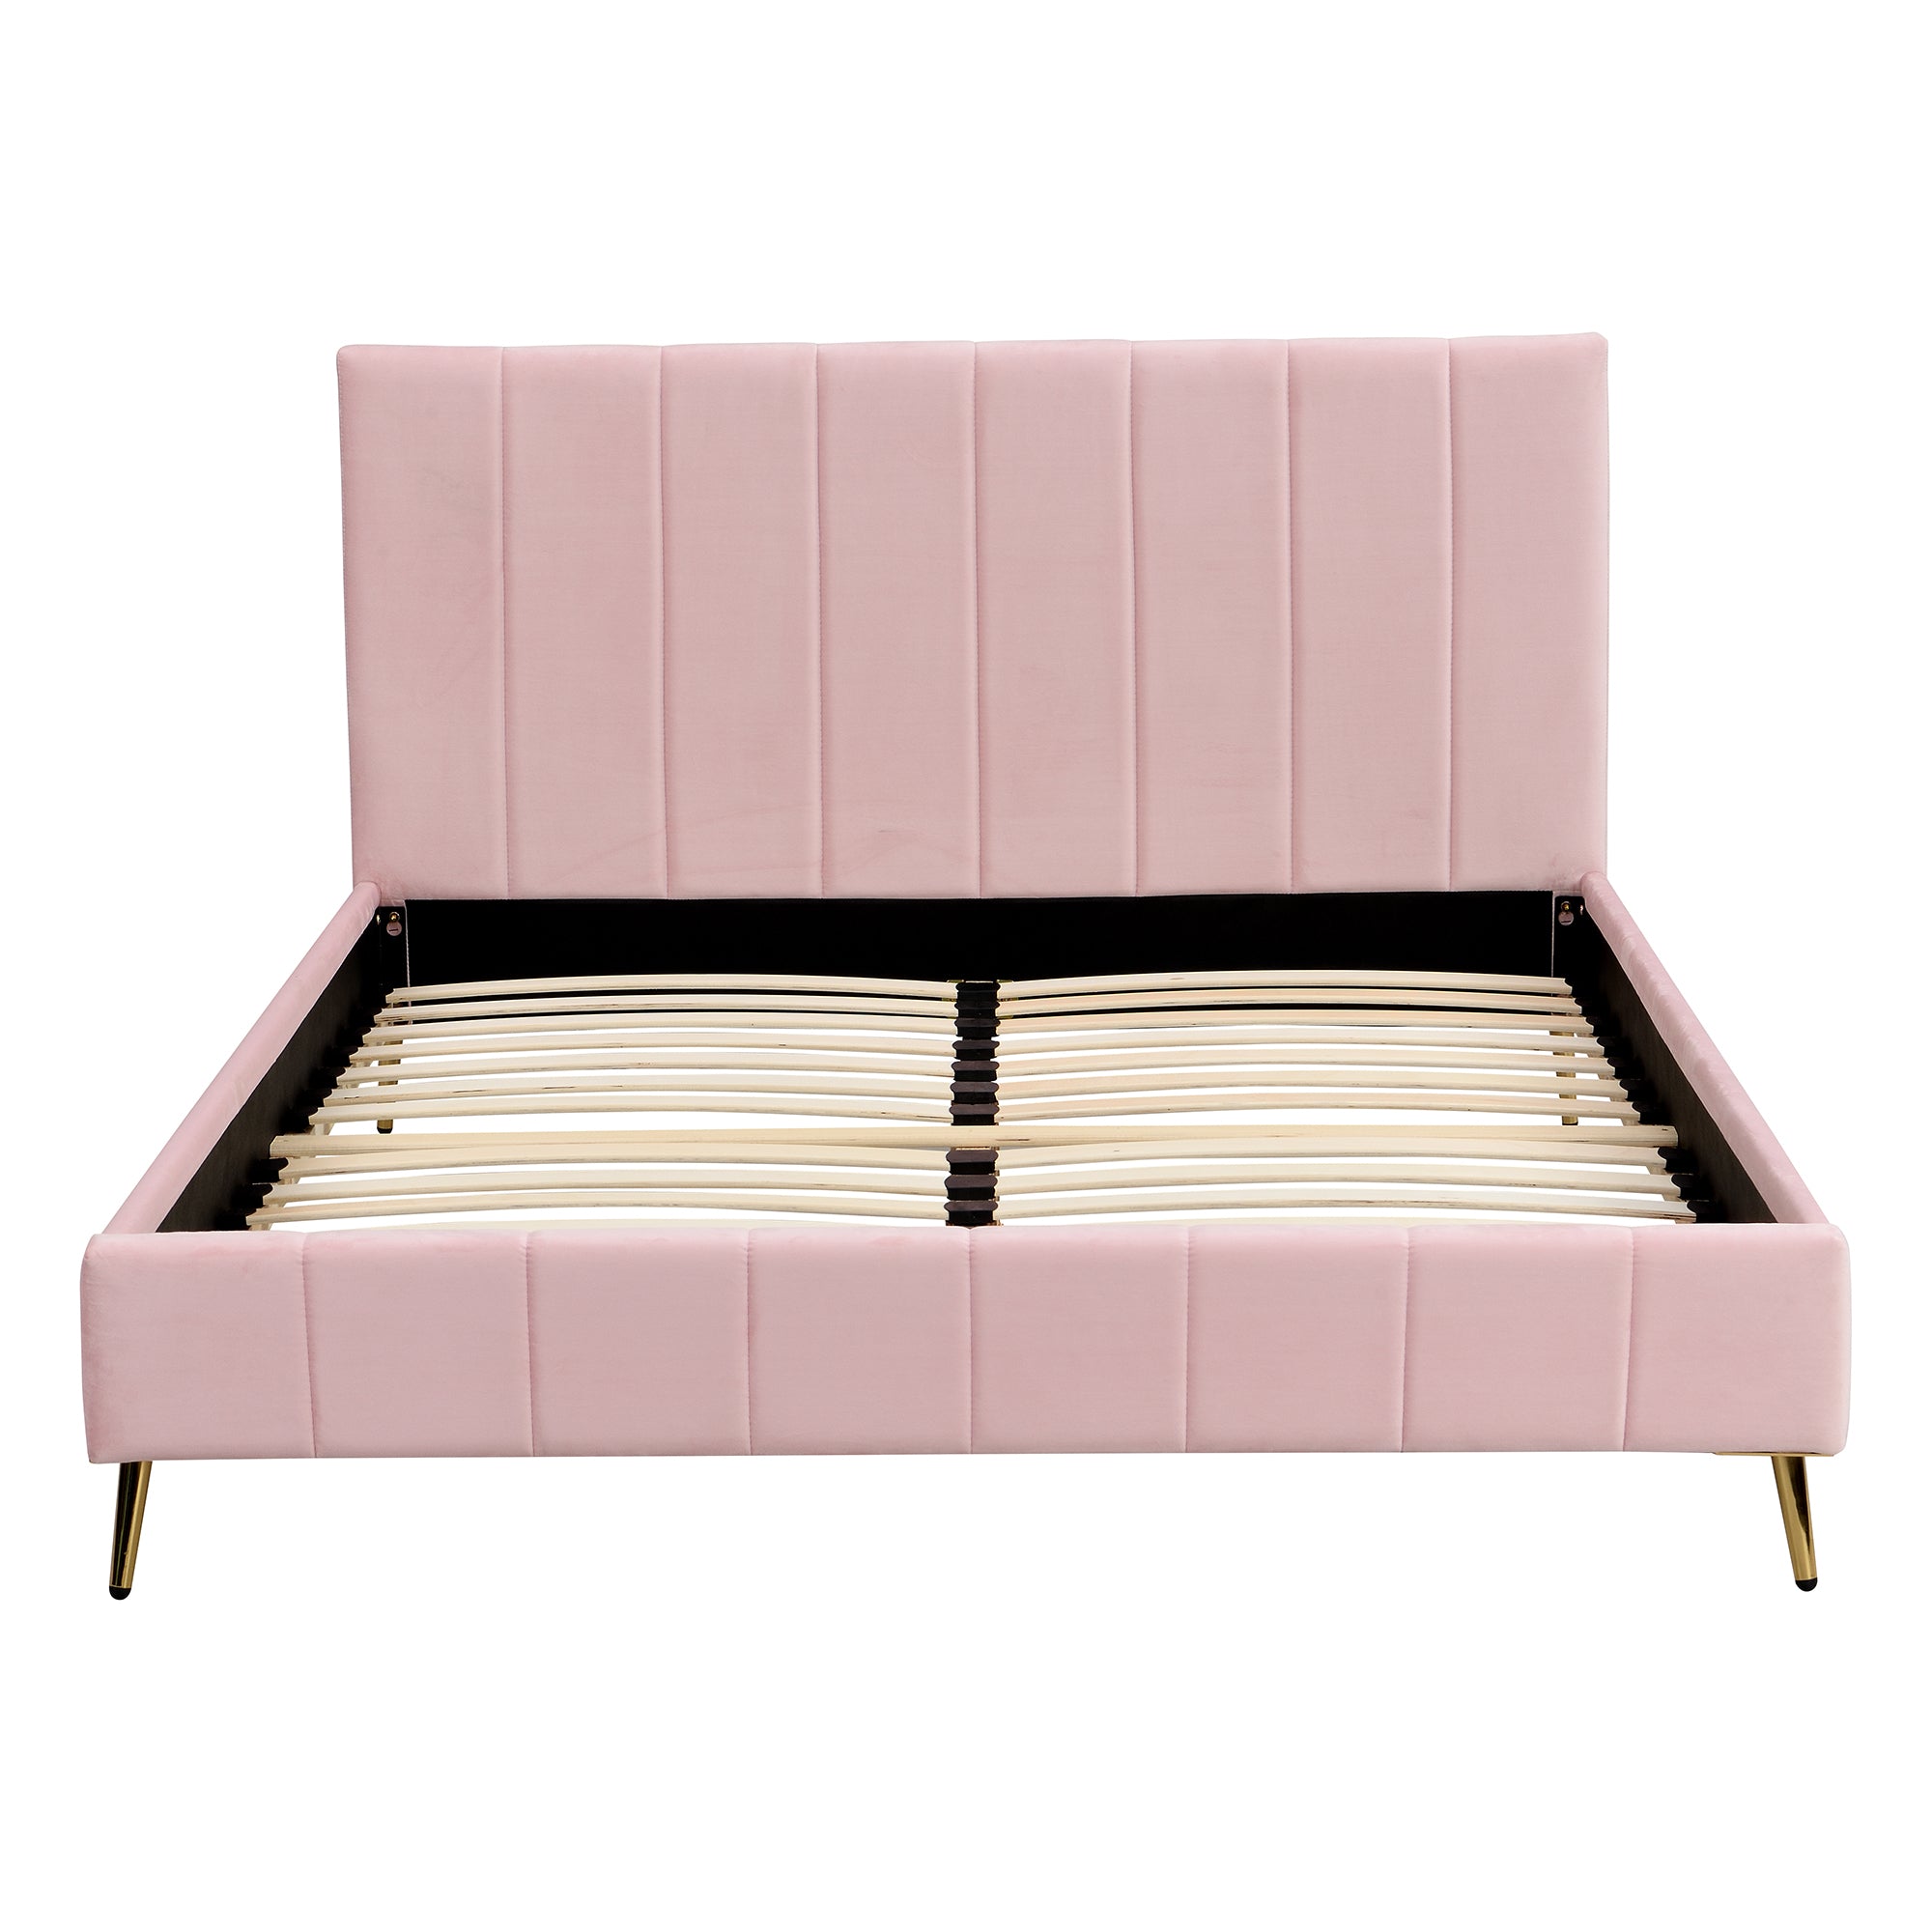 Sylvie Velvet Upholstered Bed Frame With Golden Chrome Legs Pink 7564